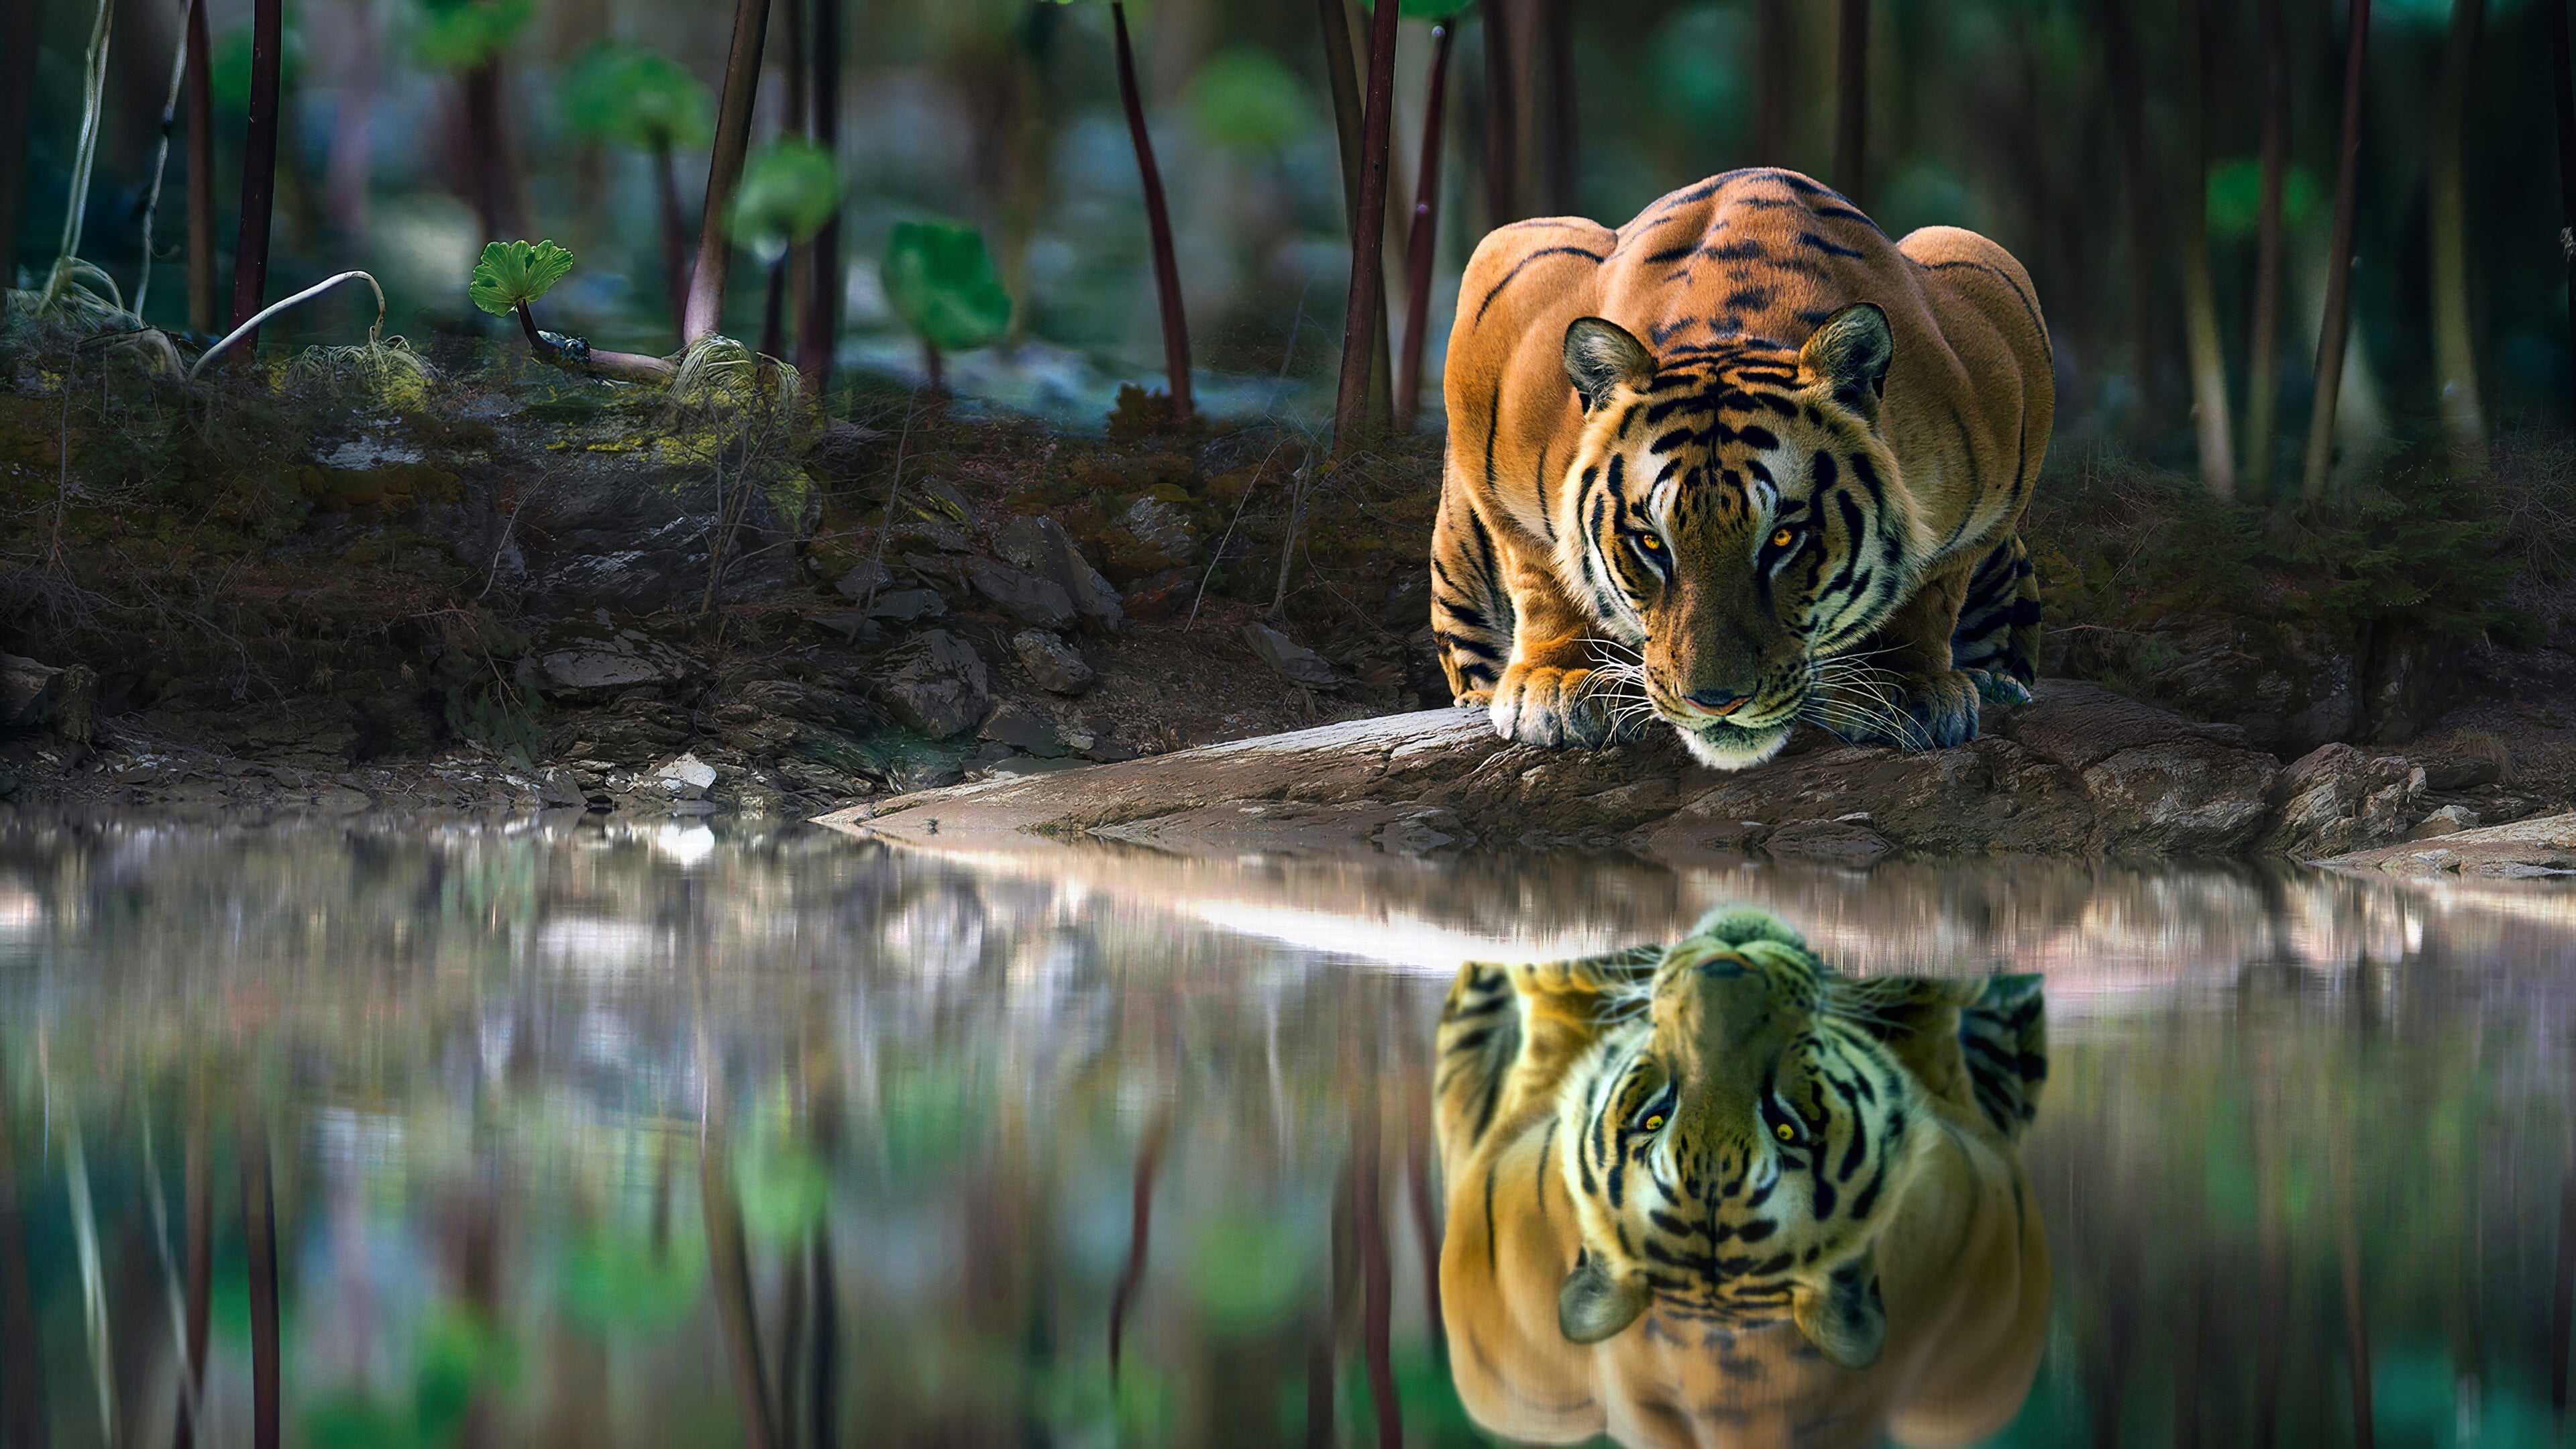 我想找那张…一只猫水下倒影是一只老虎的图片，请问谁有啊？ - 知乎